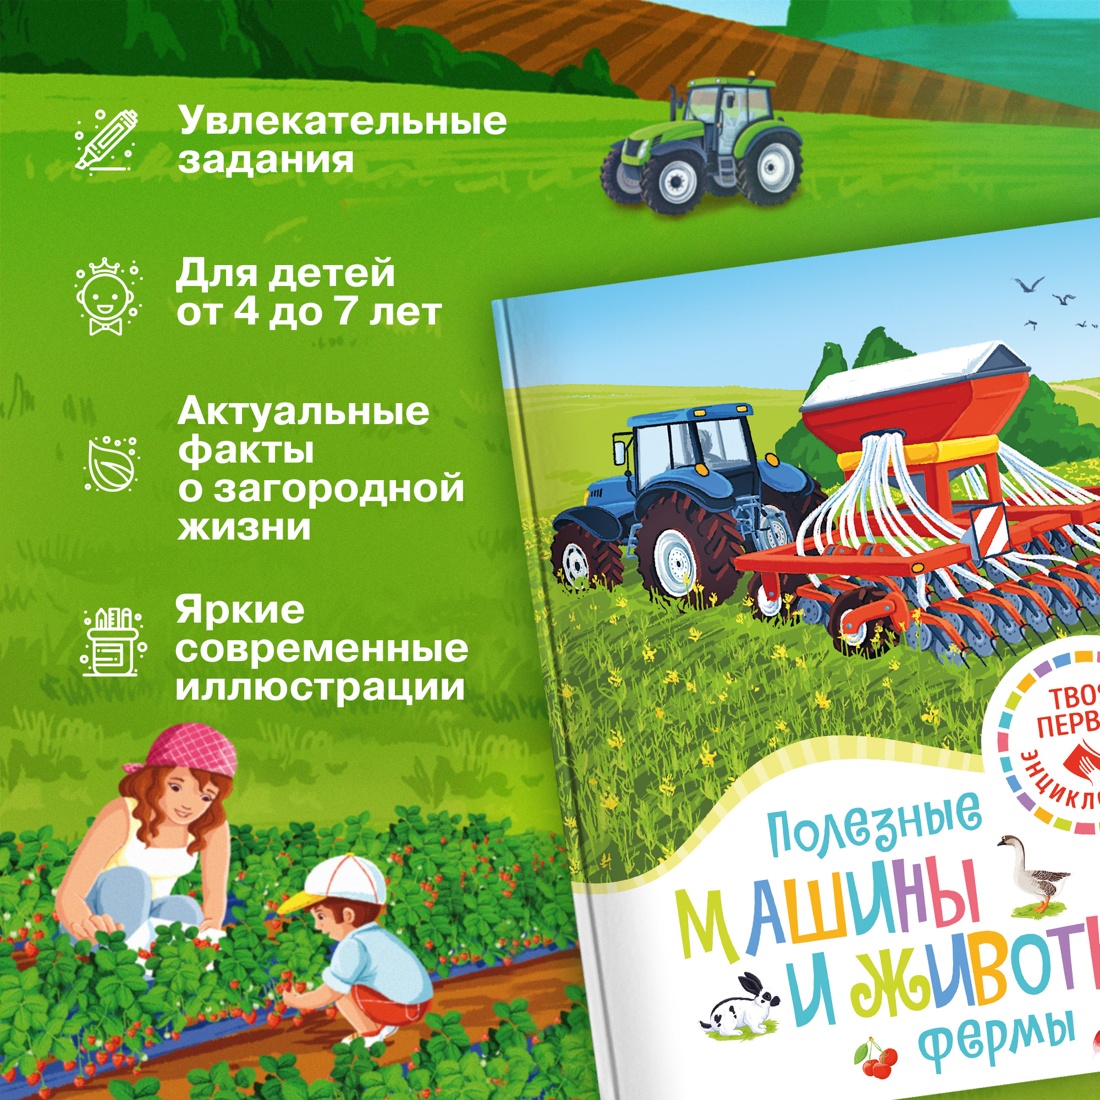 Промо материал к книге "Полезные машины и животные фермы" №1